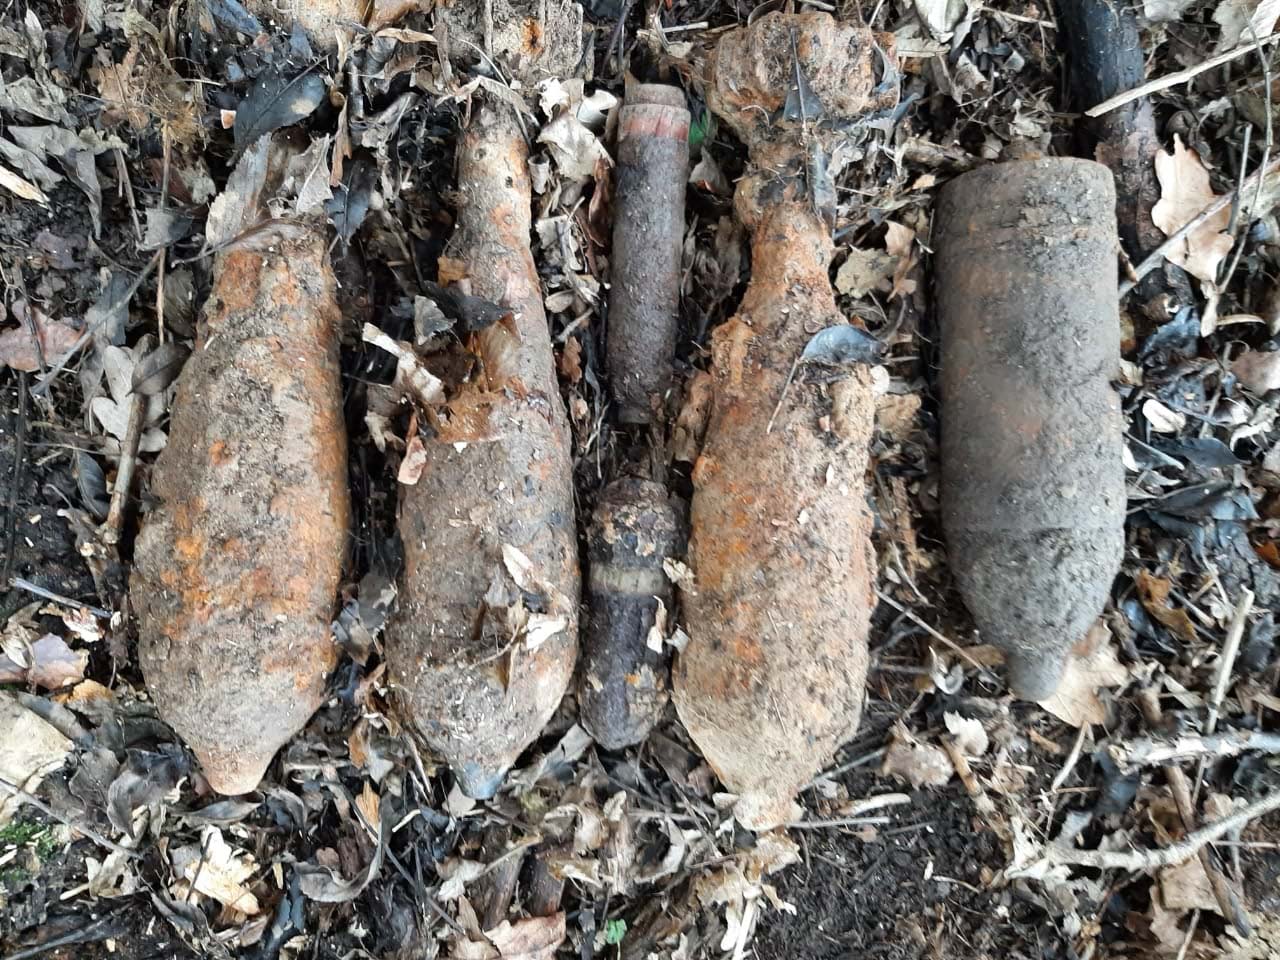 Ще 8 застарілих боєприпасів знайшли у Франківському районі (ФОТО)